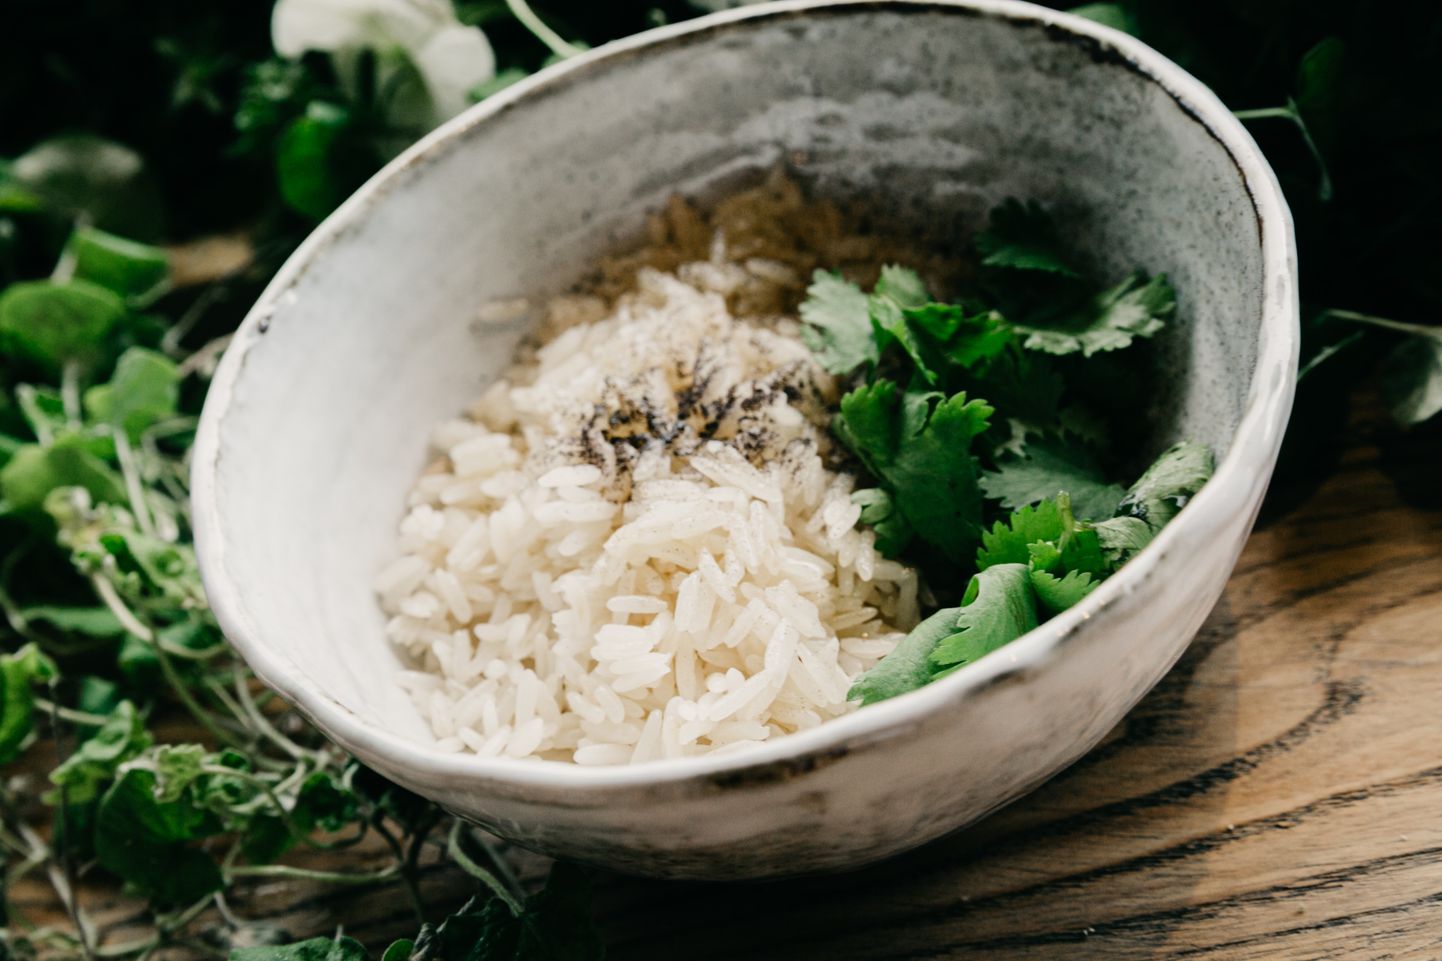 Riisi keetes on lihtne seda pisut liiga palju valmistada. Kui kaua riis aga külmikus säilib?